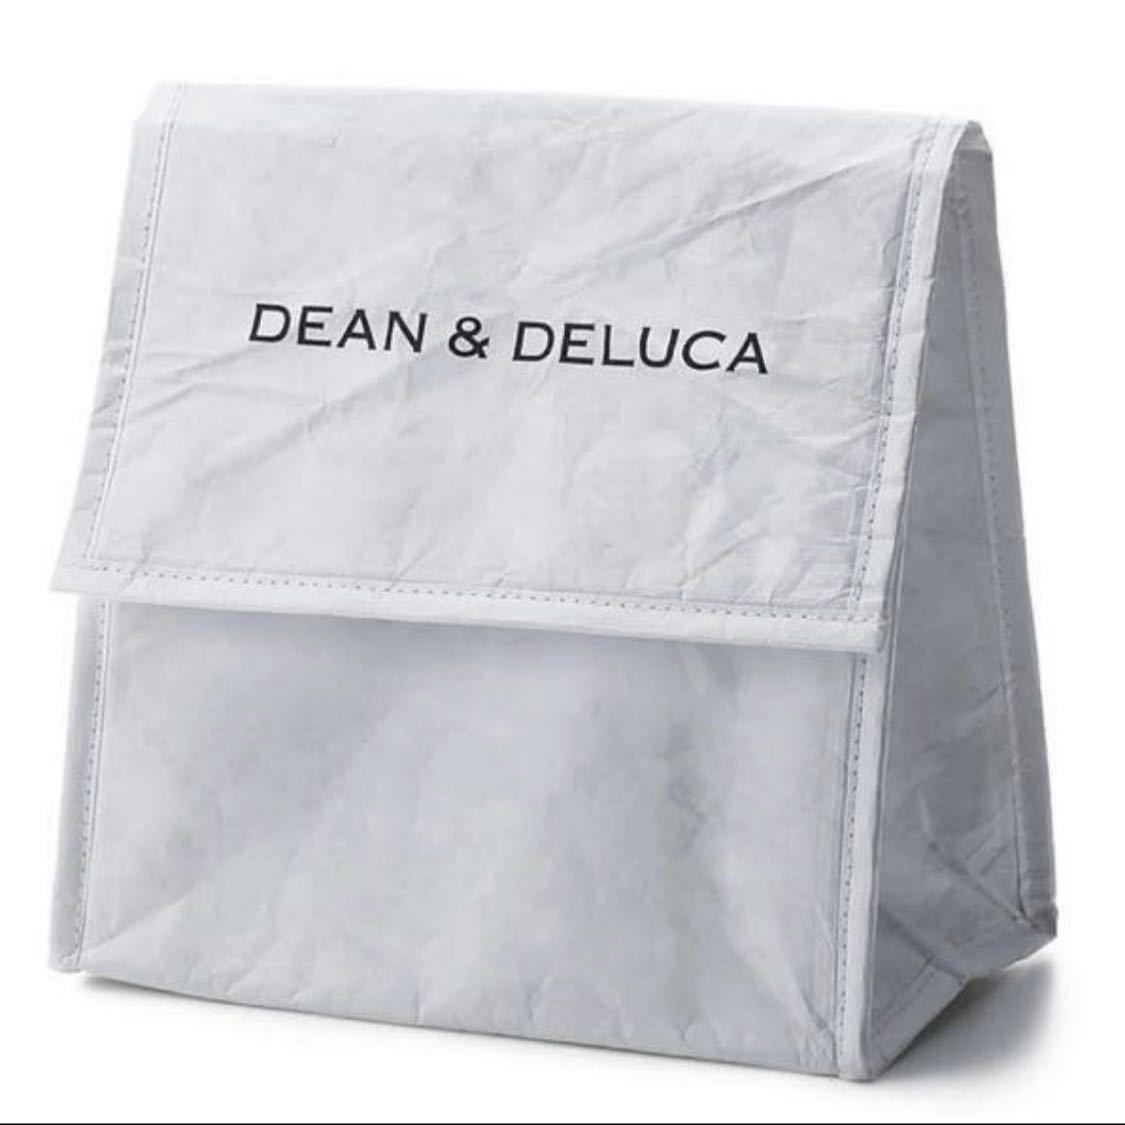 DEAN&DELUCA ランチバッグ ホワイト 保冷バッグ エコバッグ クーラーバッグ お弁当入れ ディーン&デルーカディーンアンドデルーカ ミニマム